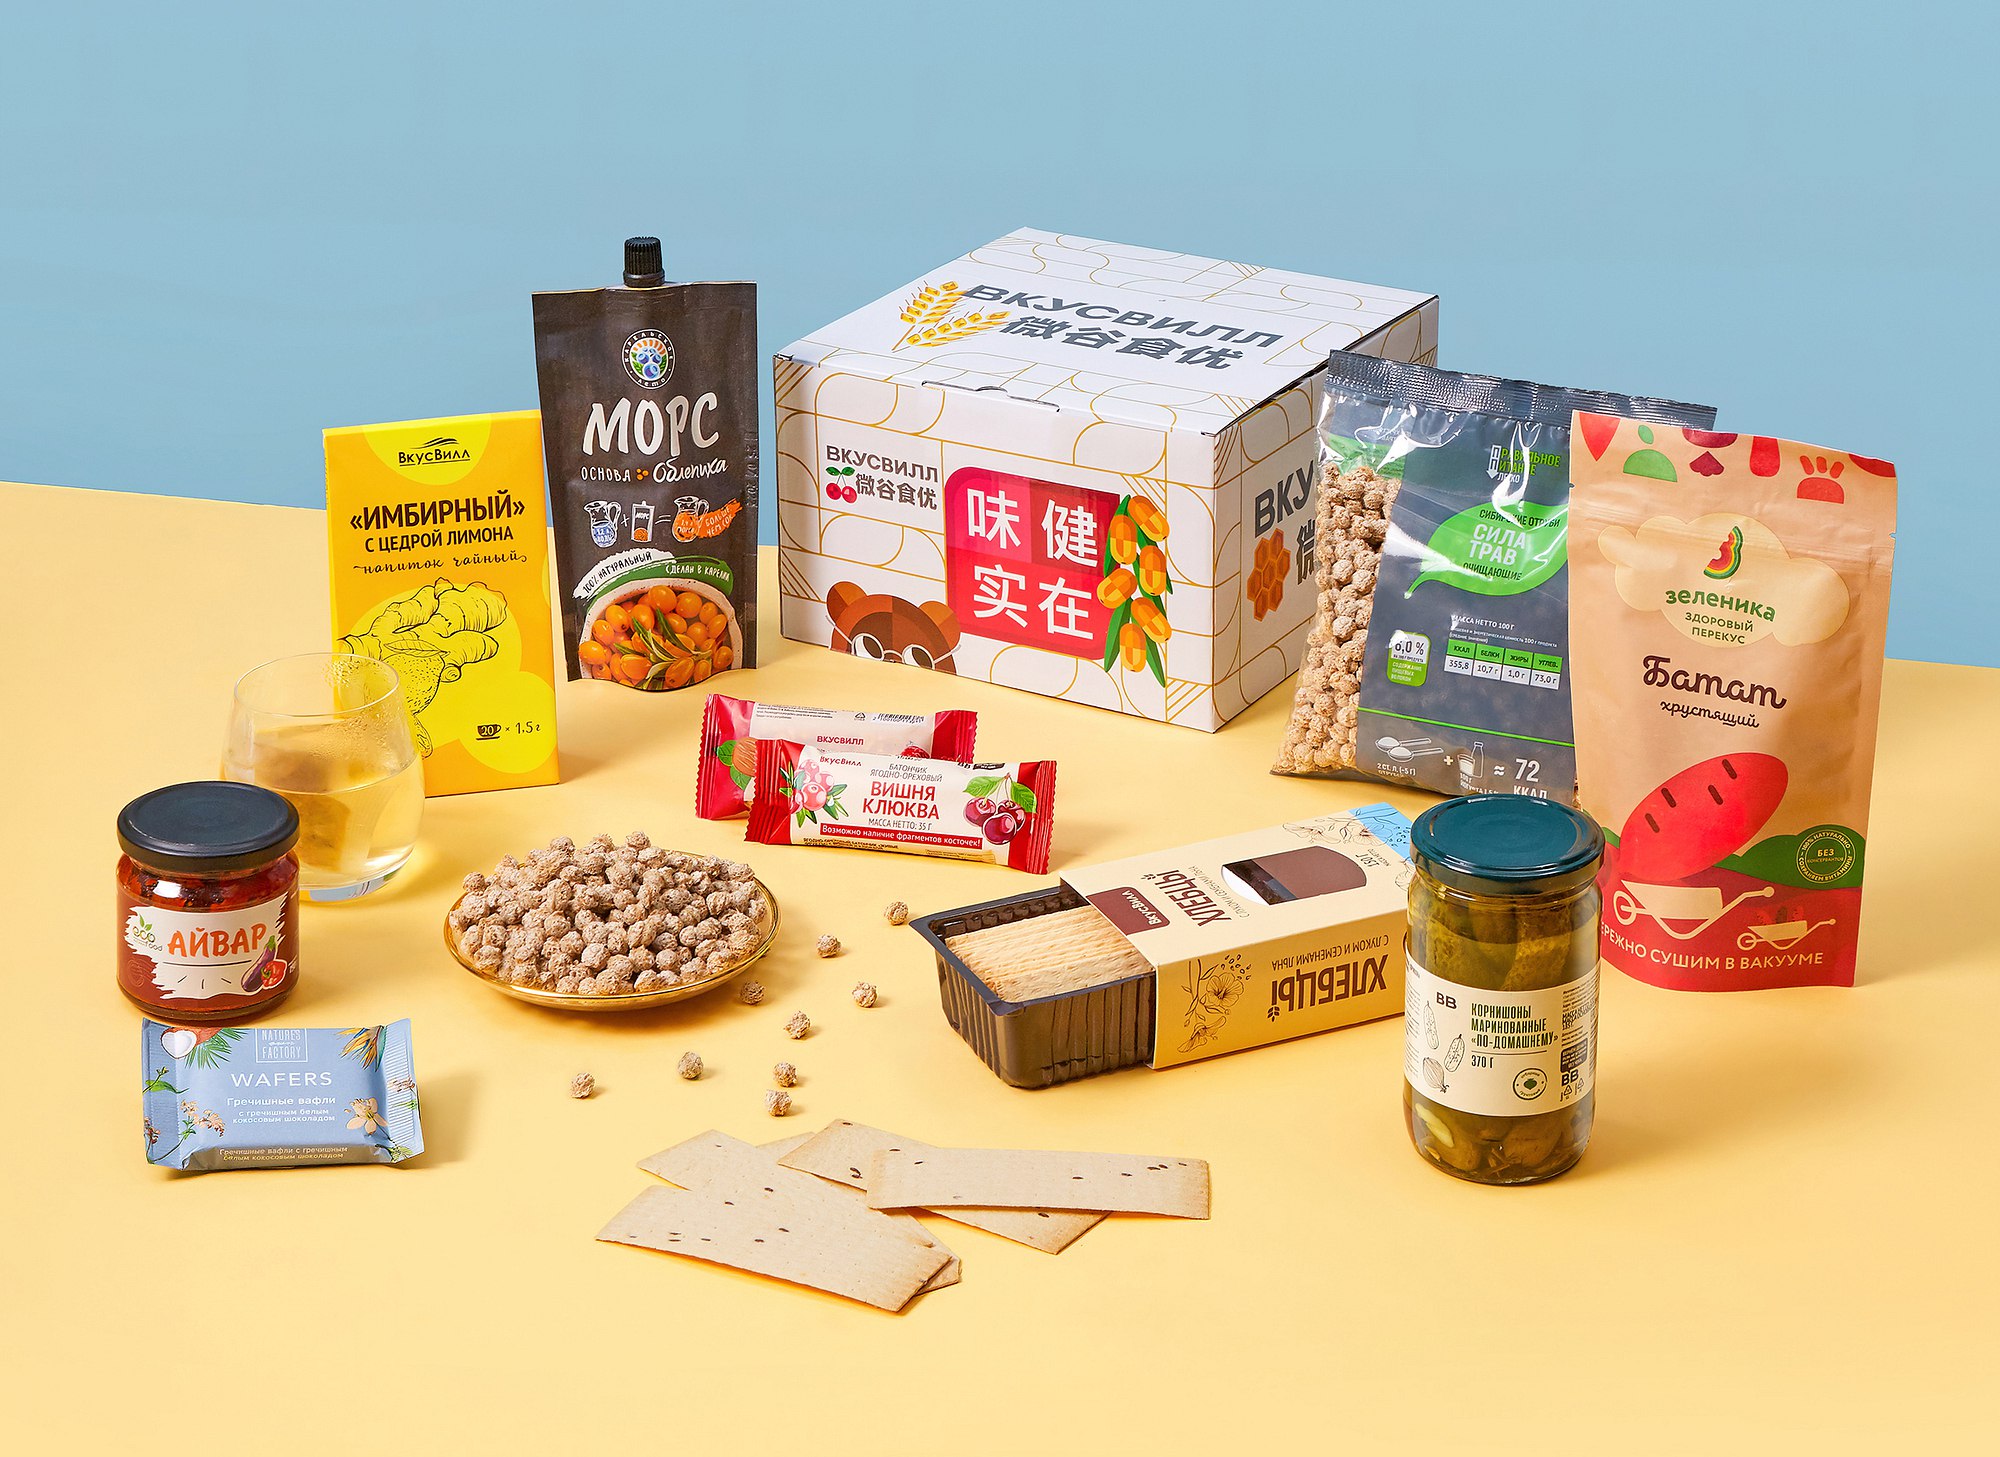 «Вкусвилл» запустил тестовую продажу наборов для здорового питания на китайском рынке